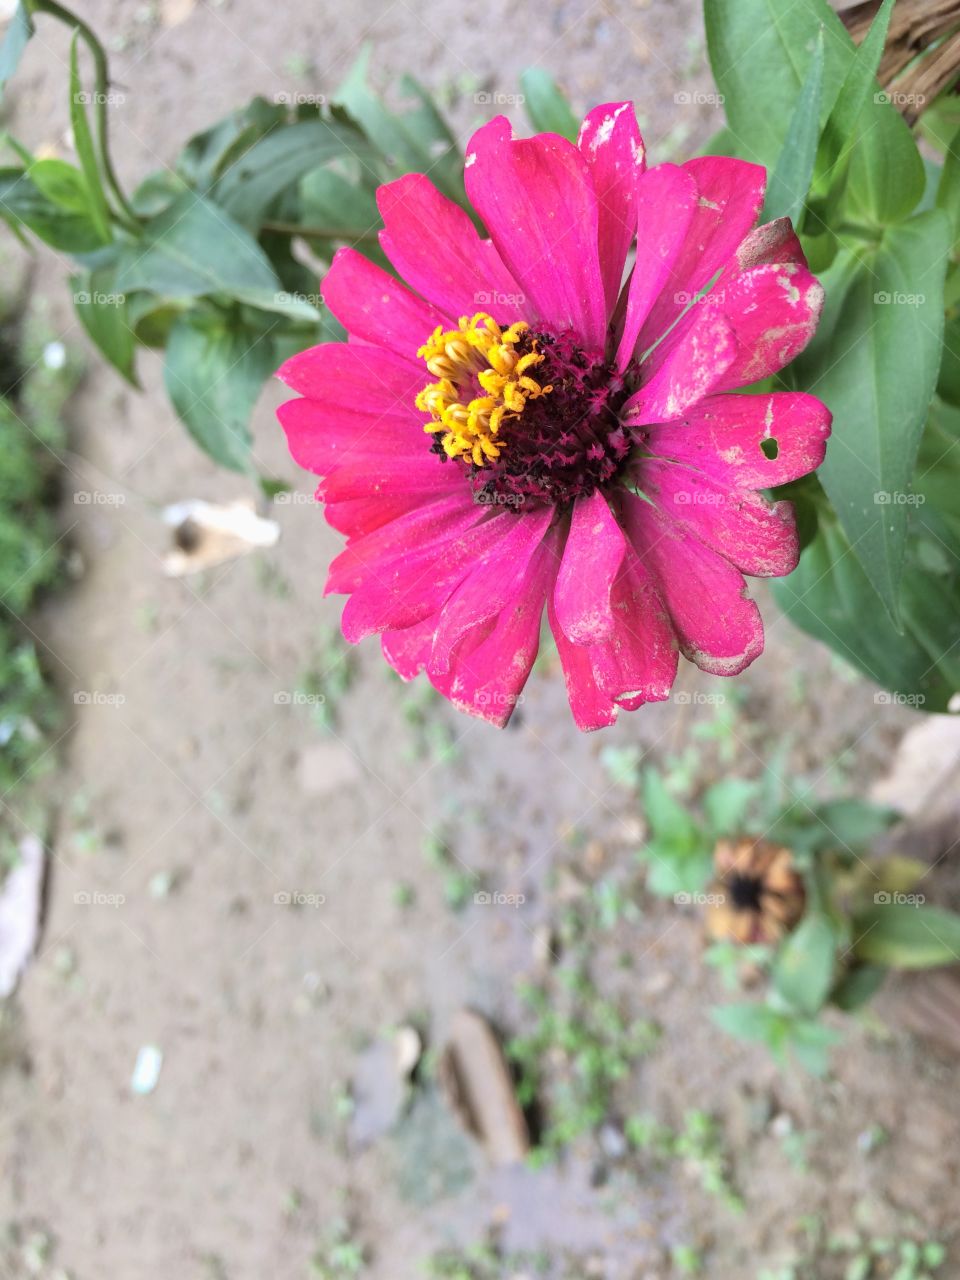 Colour full flowers